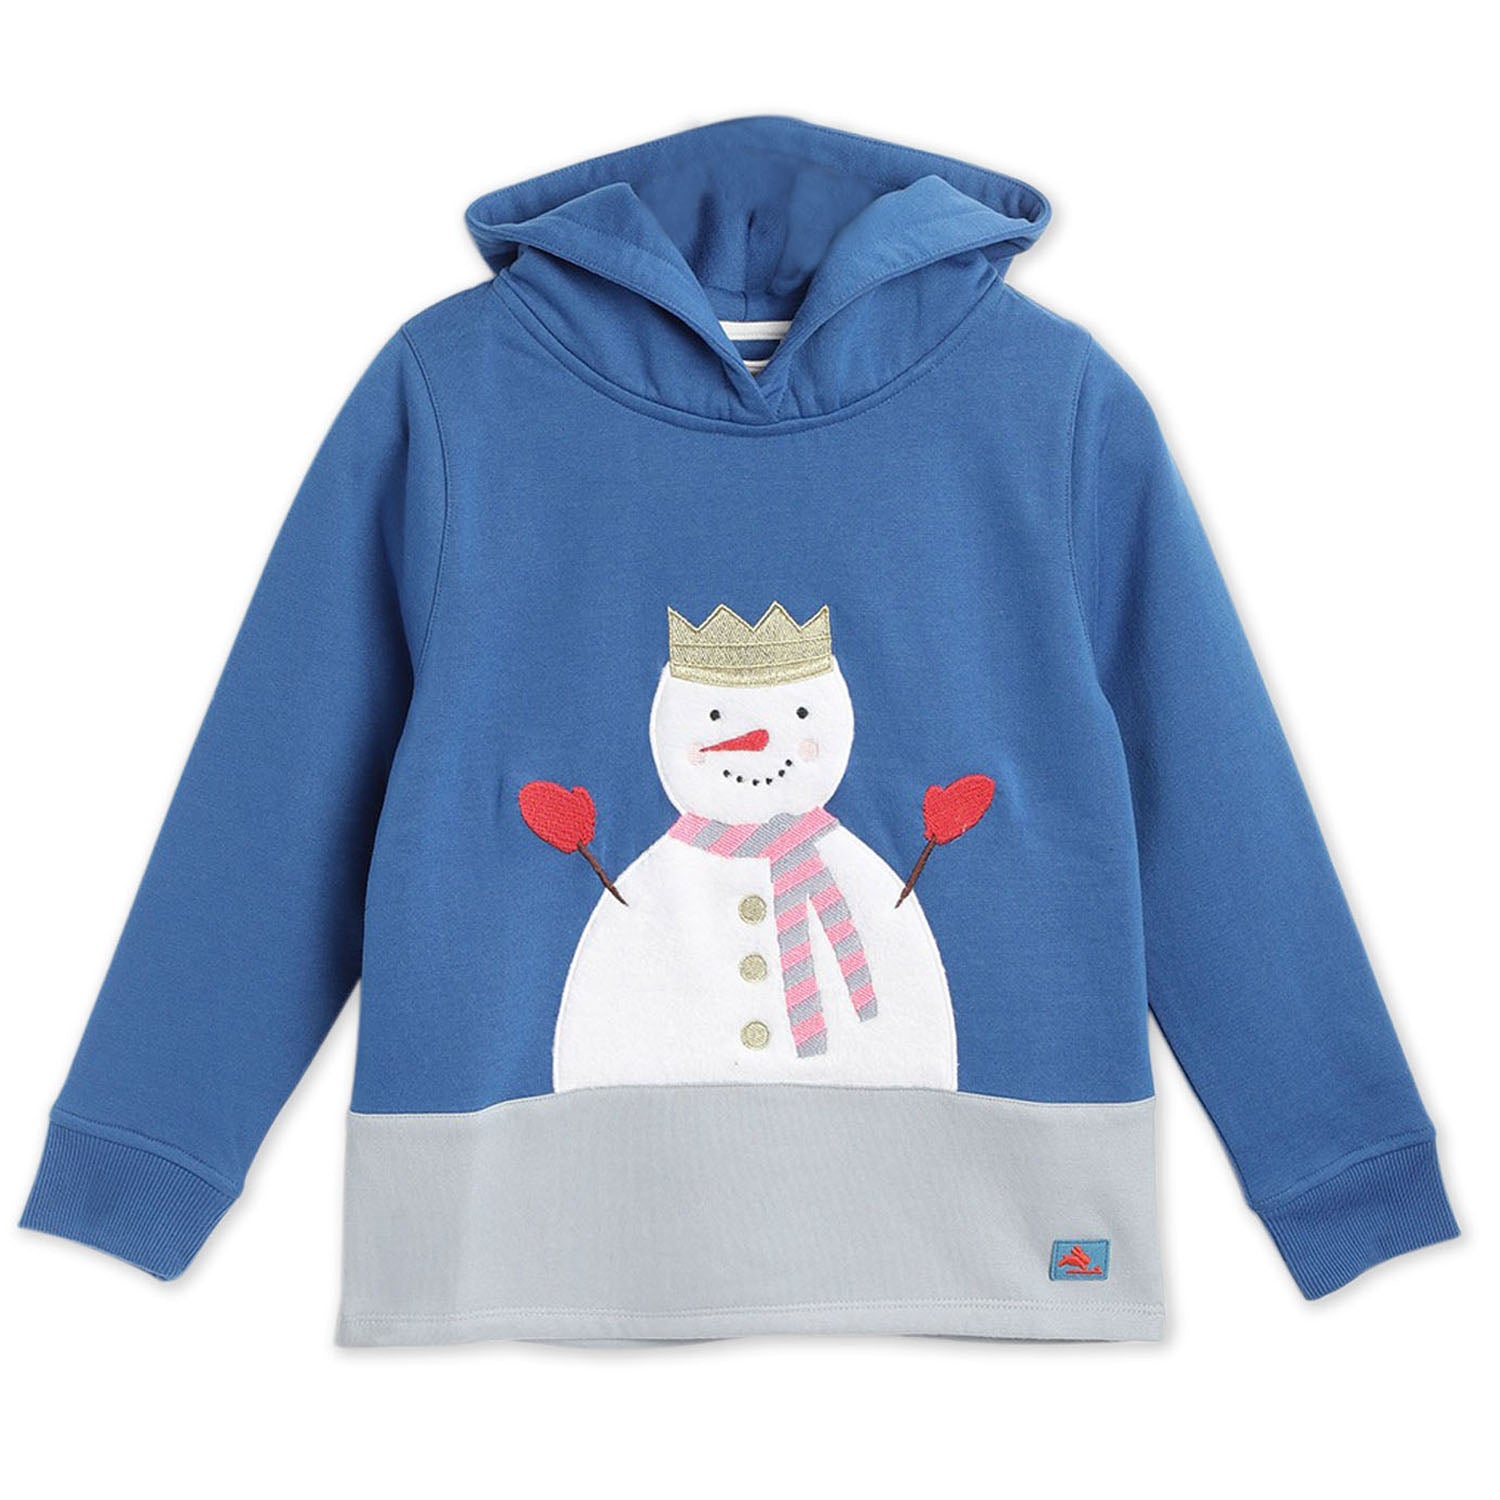 Snowman-Applique-Hoodie-Sweatshirt